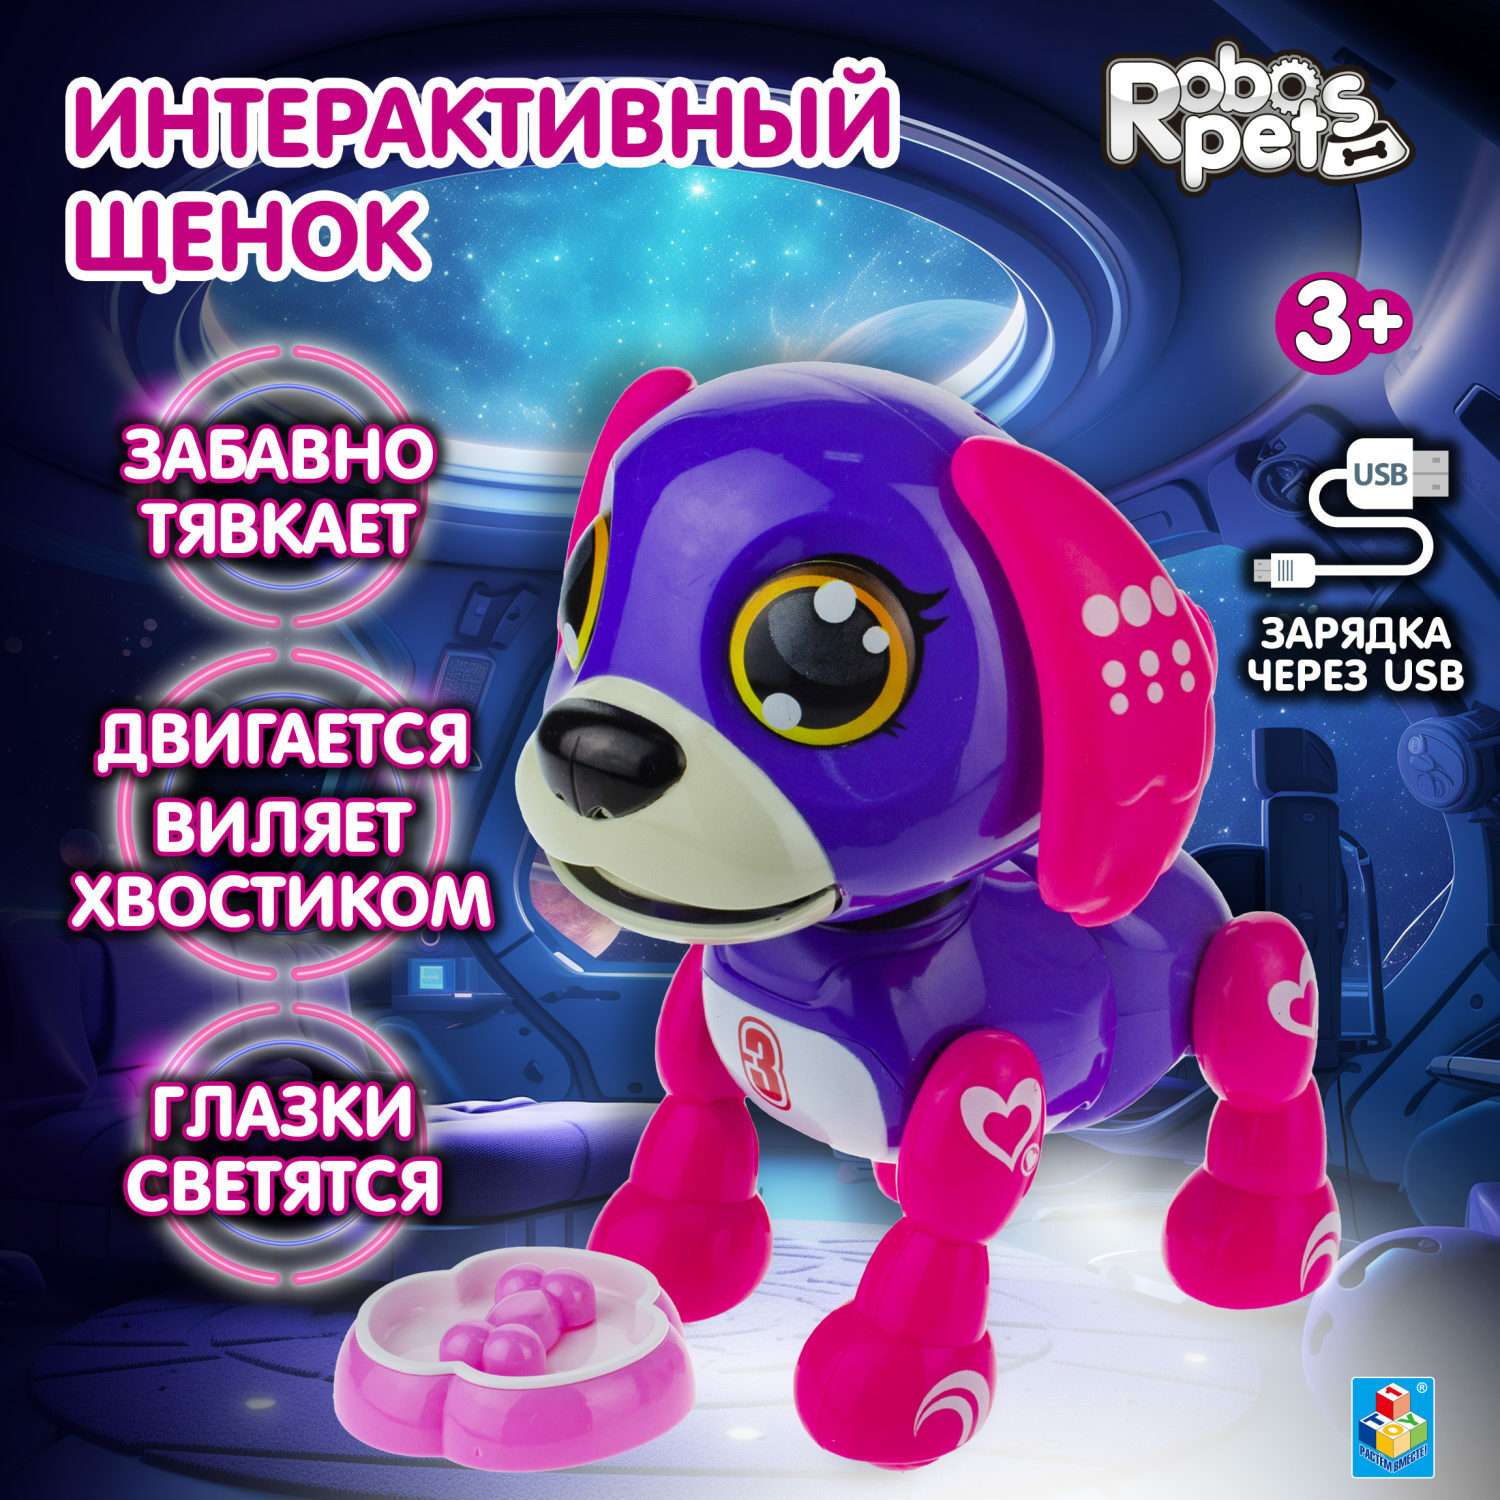 Интерактивная игрушка Robo Pets робо-щенок фиолетовый - фото 1